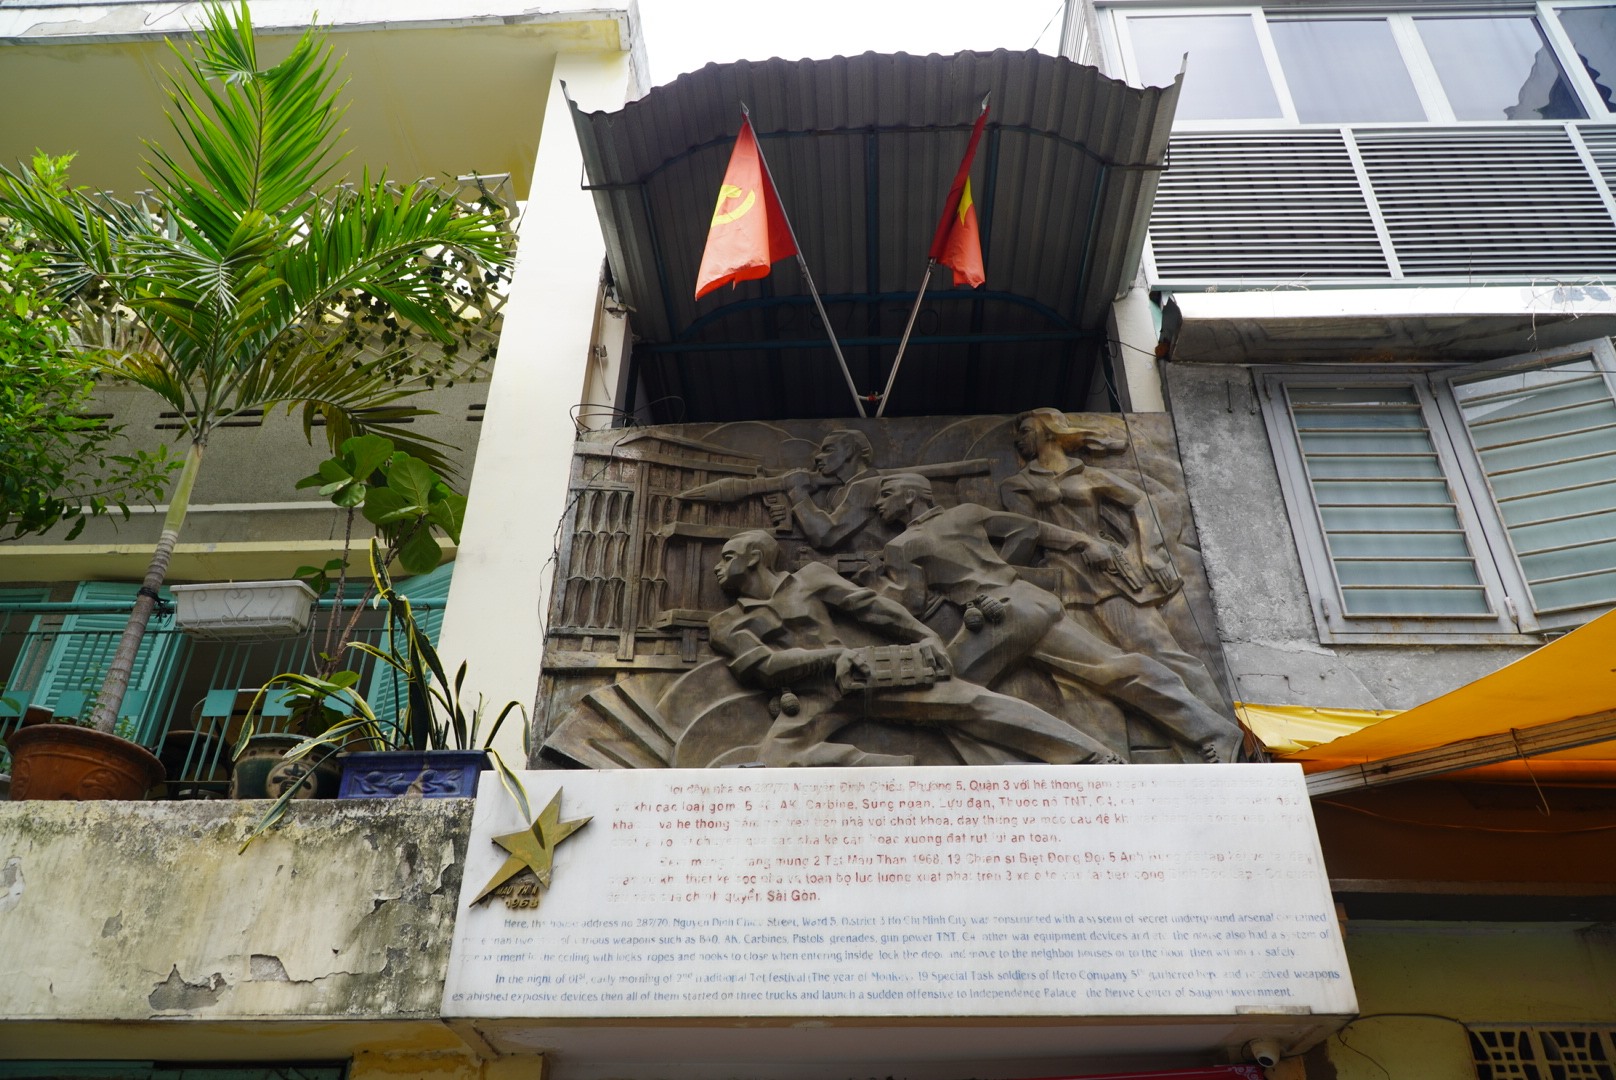 Hình ảnh phía bên ngoài căn nhà. Năm 1988, căn nhà được Bộ Văn hóa công nhận là Di tích lịch sử cấp quốc gia, mang tên “Hầm chứa vũ khí của Biệt động Sài Gòn tấn công dinh Độc Lập Tết Mậu Thân 1968“.